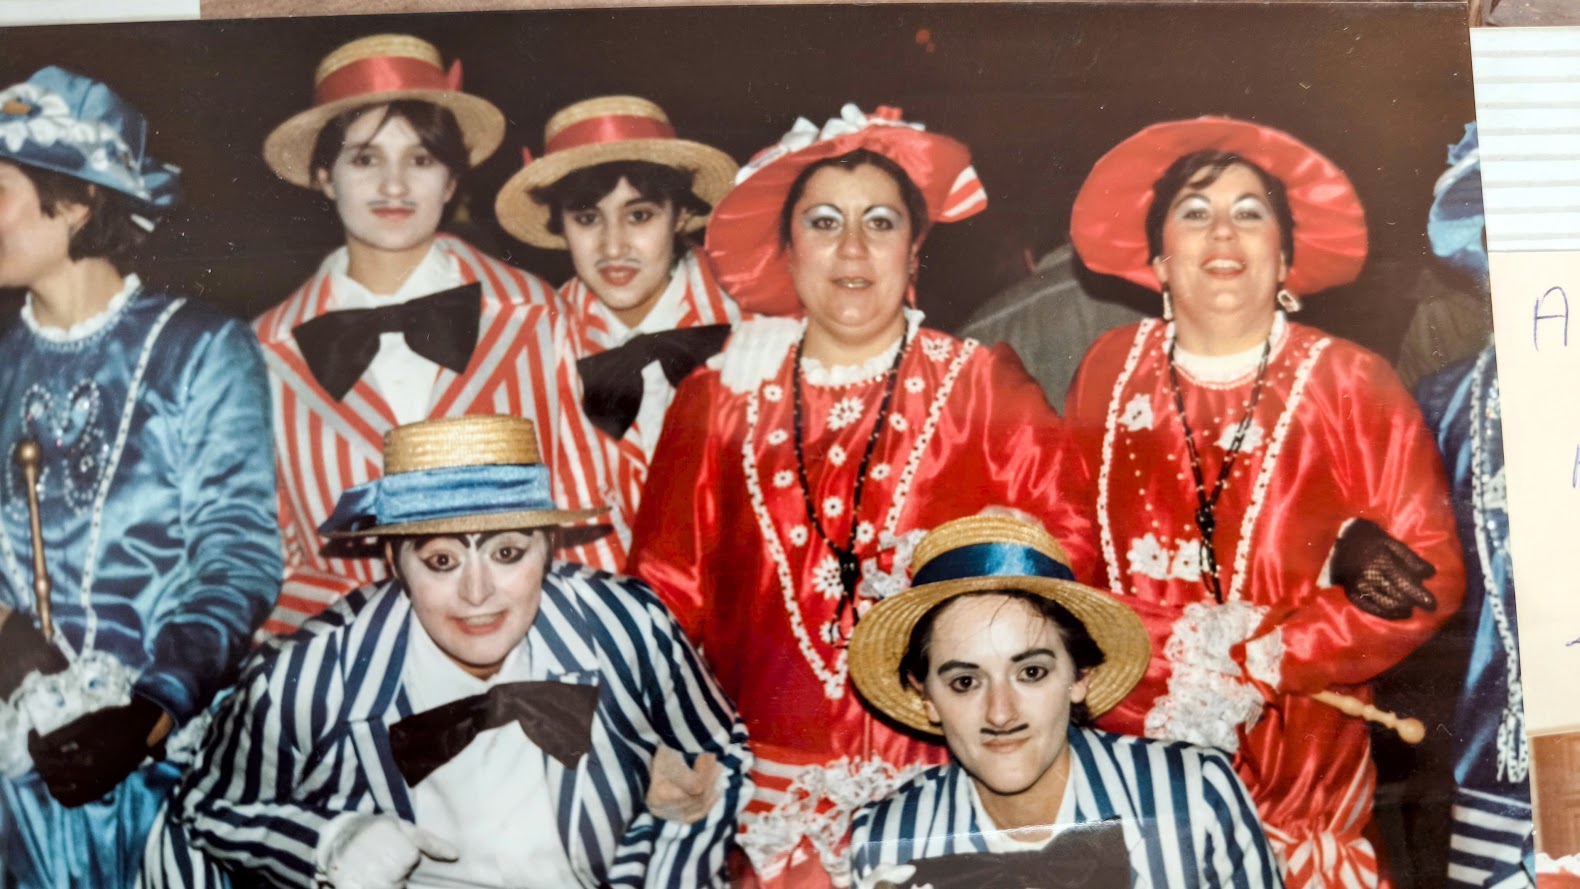 La peña Lección de Humor cumple 40 años animando y embelleciendo los carnavales de Ponferrada 18